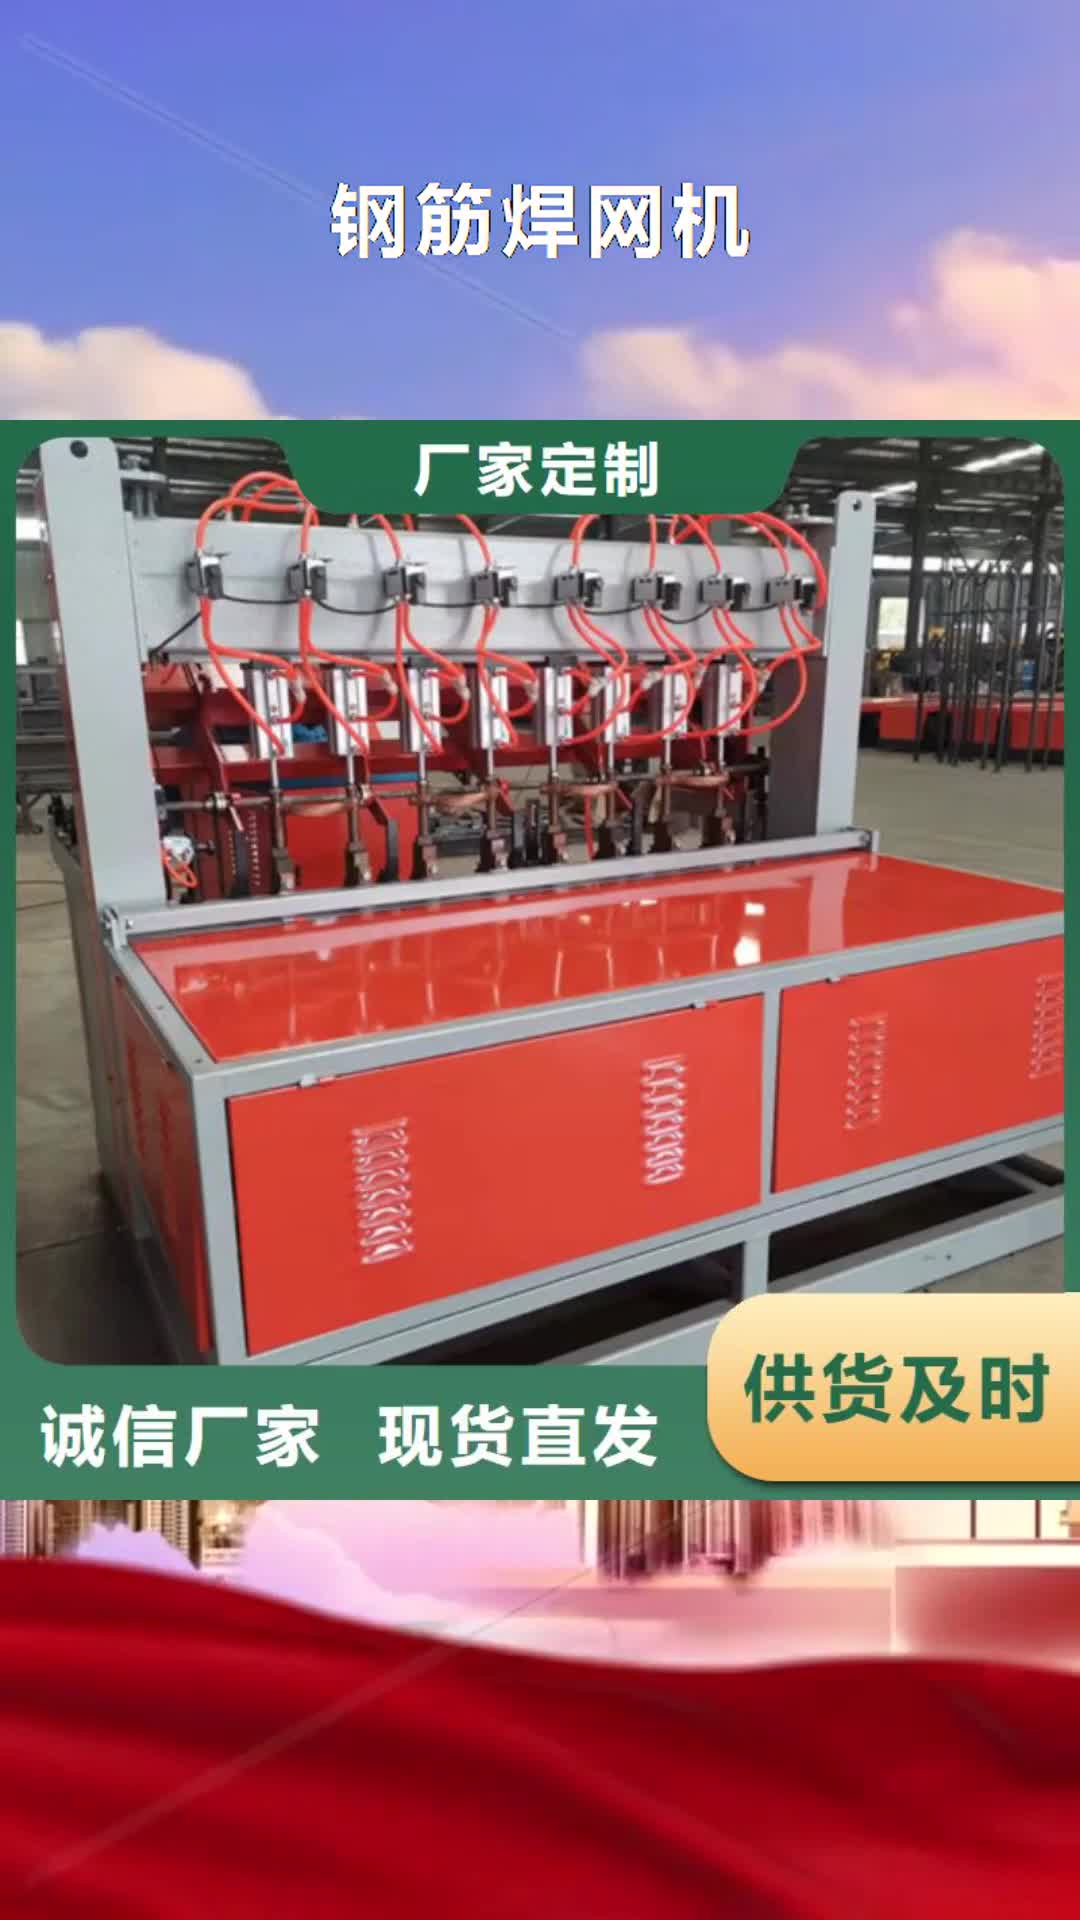 北京【钢筋焊网机】,数控钢筋锯切套丝生产品质商家